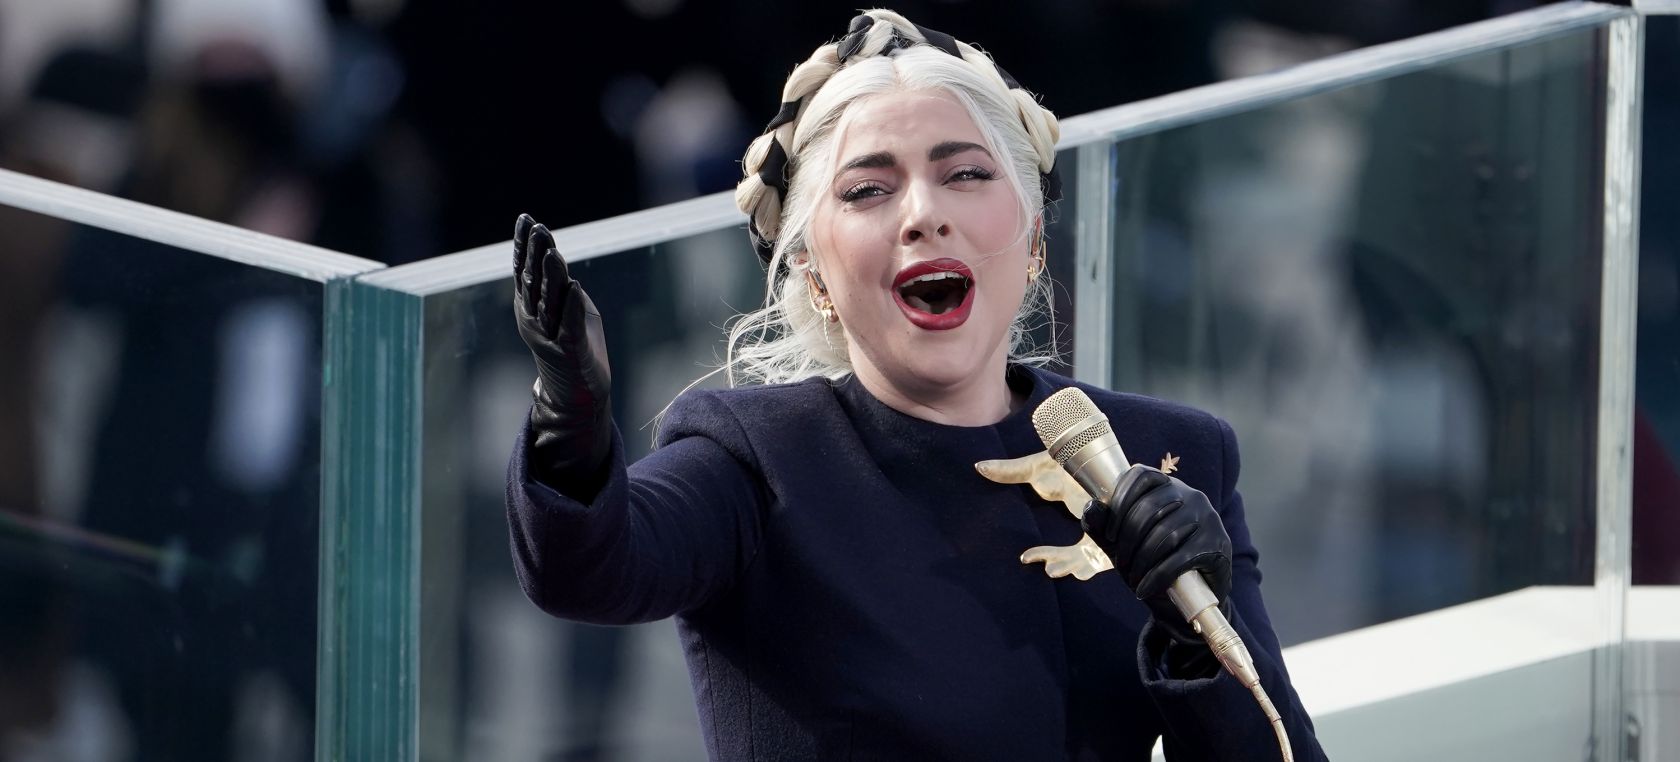 Lady Gaga, a punto de lanzar una colaboración… ¿con Peppa Pig?